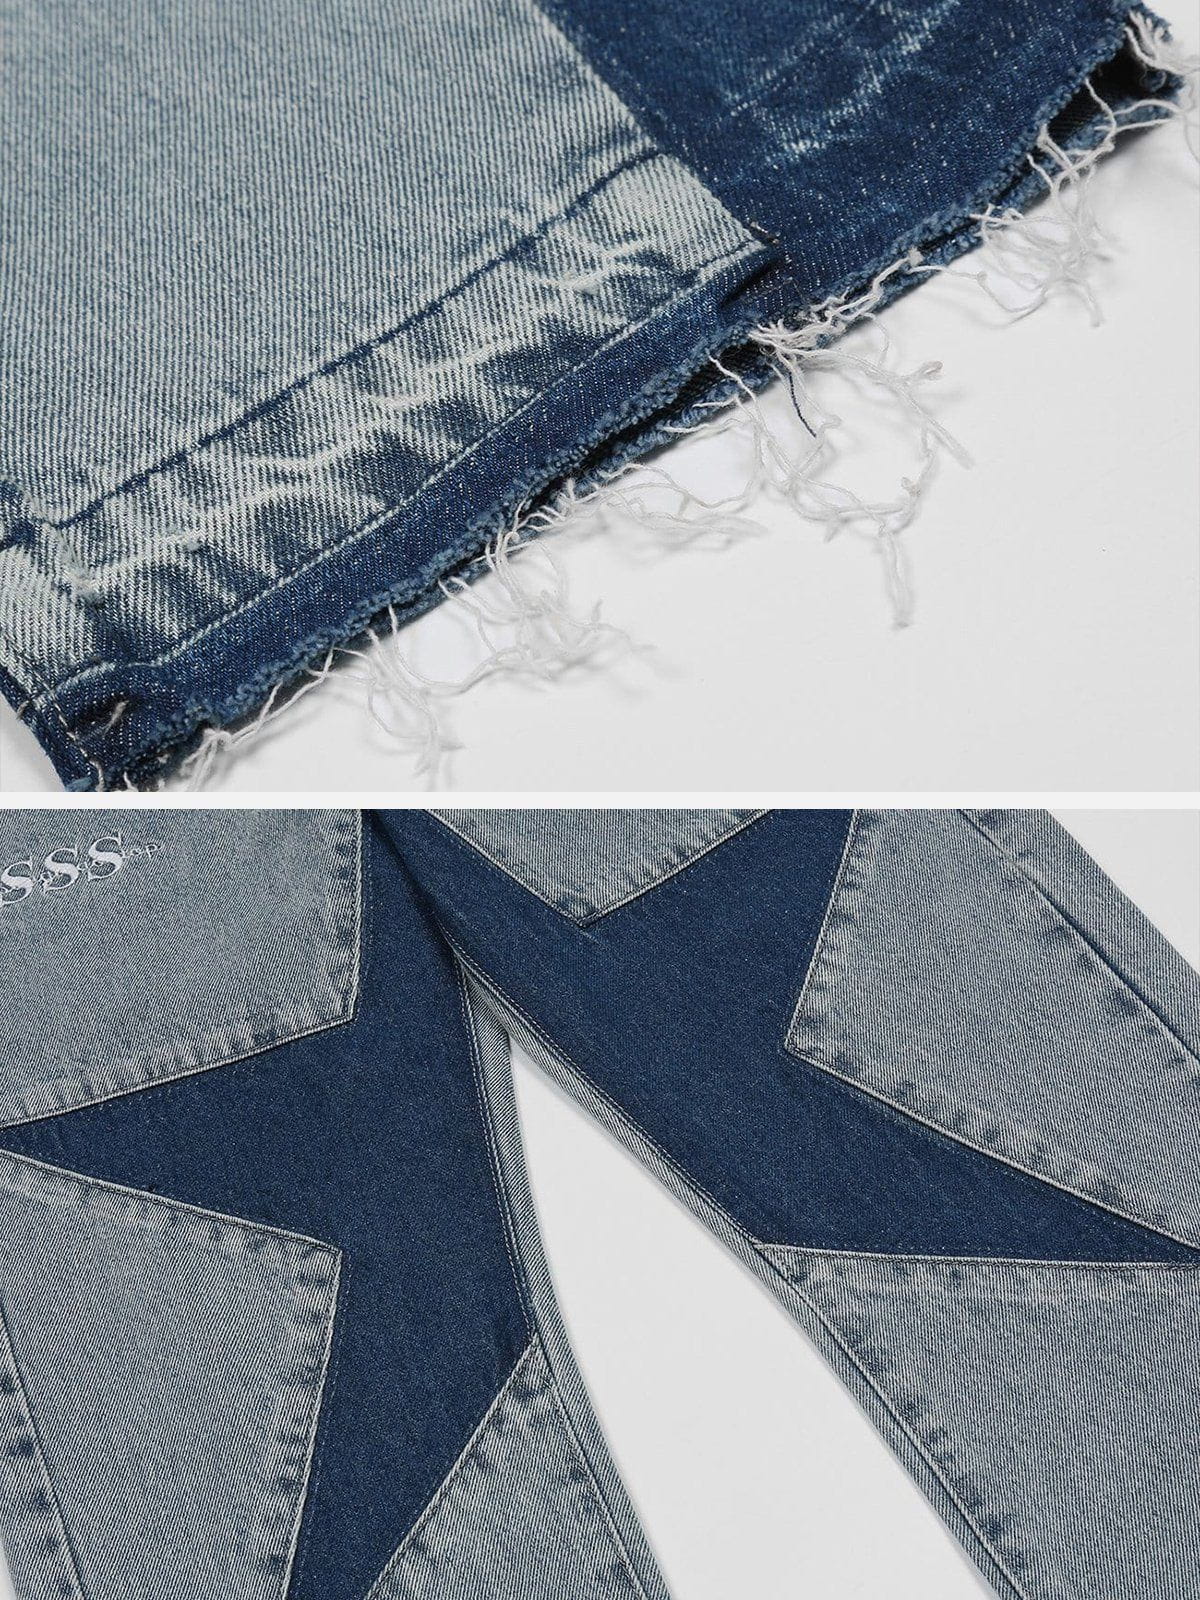 Faire Echo Star Panelled Contrast Jeans Faire Echo